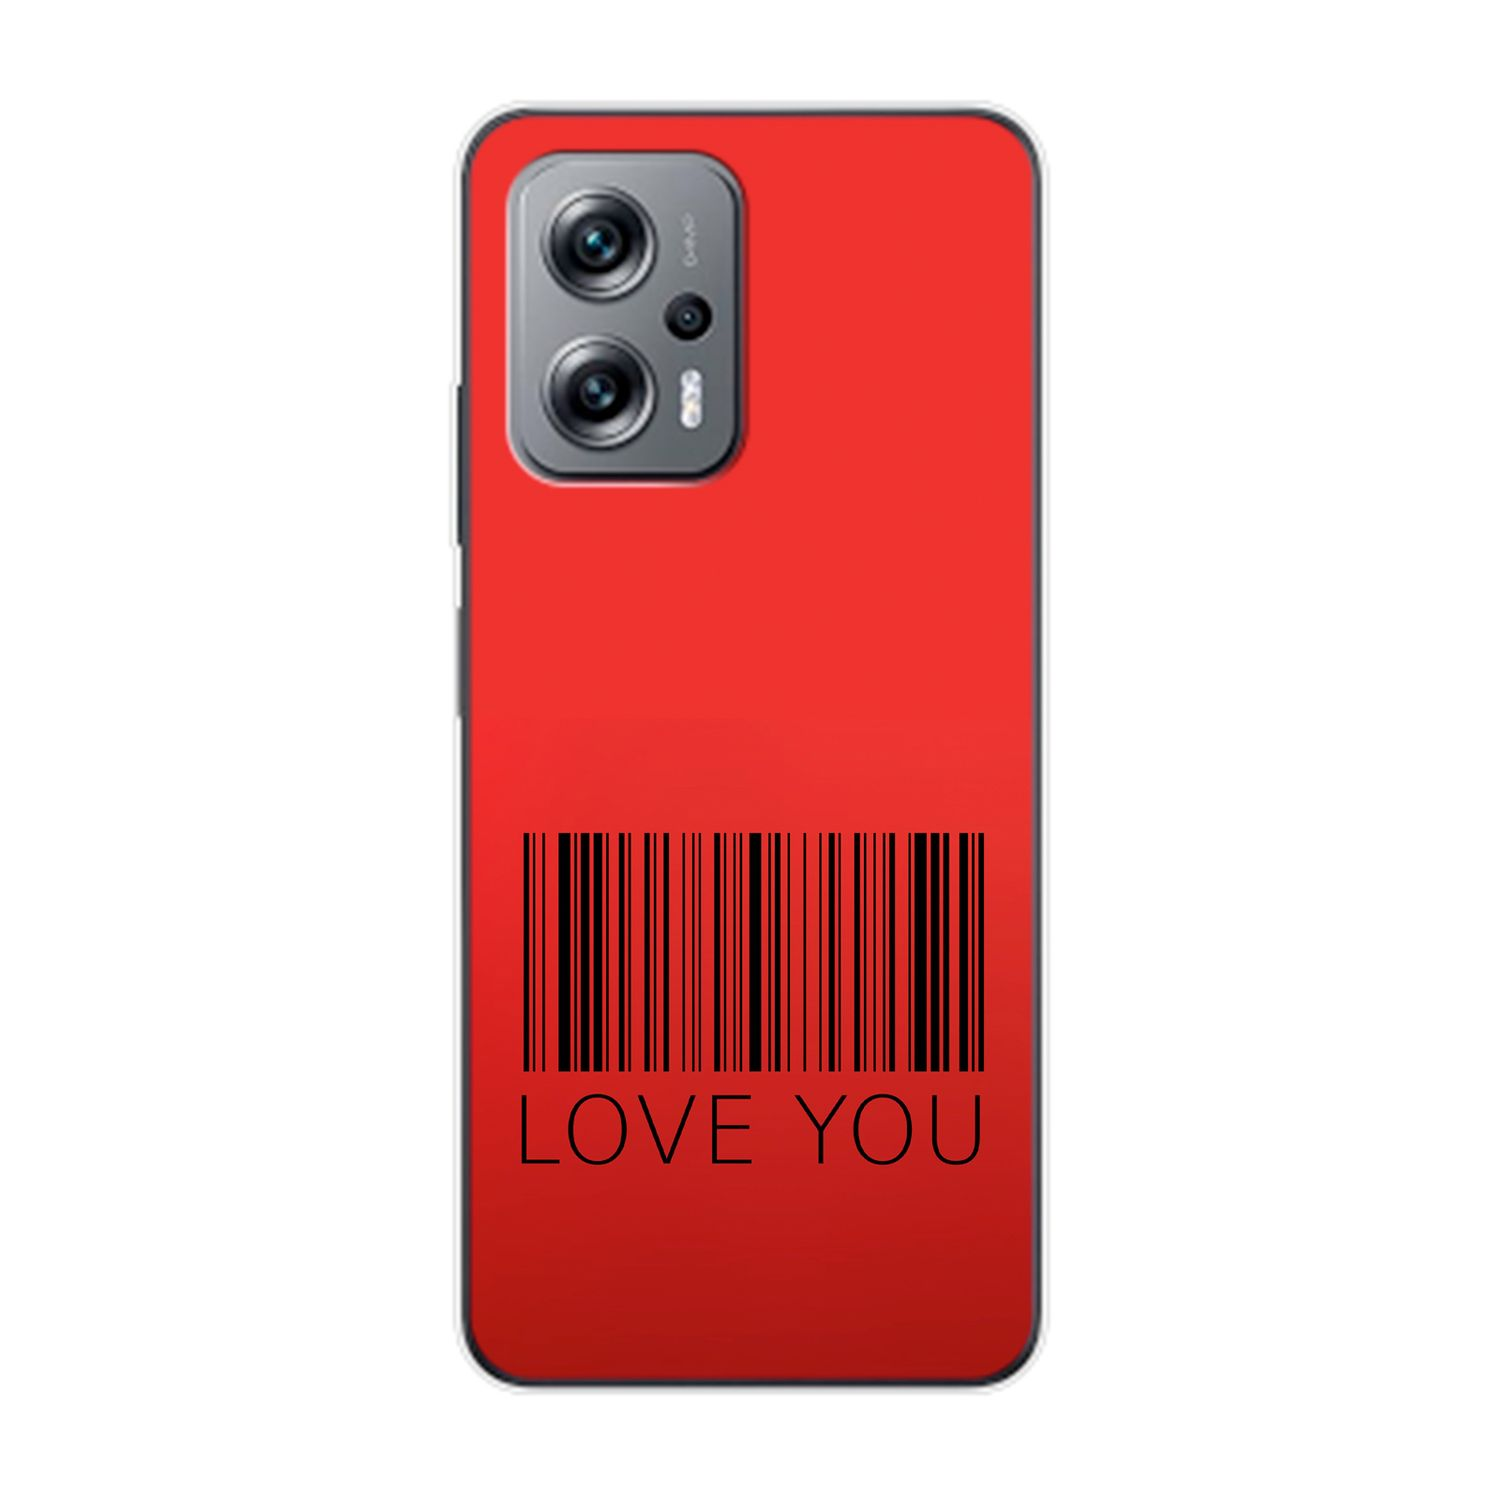 Case, DESIGN K50i, KÖNIG Redmi Backcover, You Xiaomi, Love